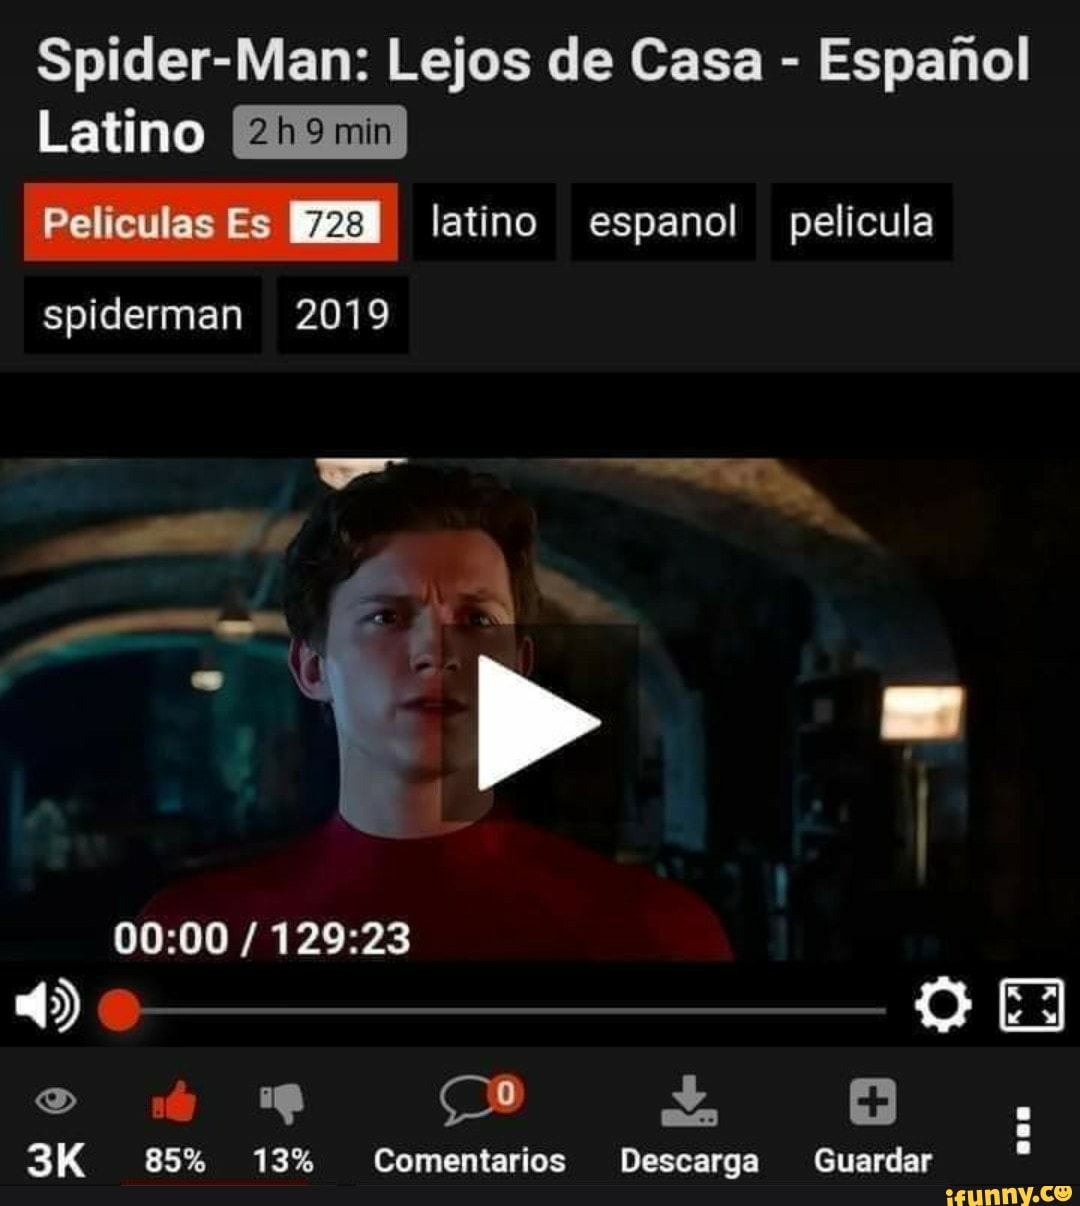 Spider-Man: Lejos de Casa - Espariol Latino ELELD Películas Es latino  espanol pelicula spiderman 2019 85% 13% Comentarios Descarga Guardar -  iFunny Brazil